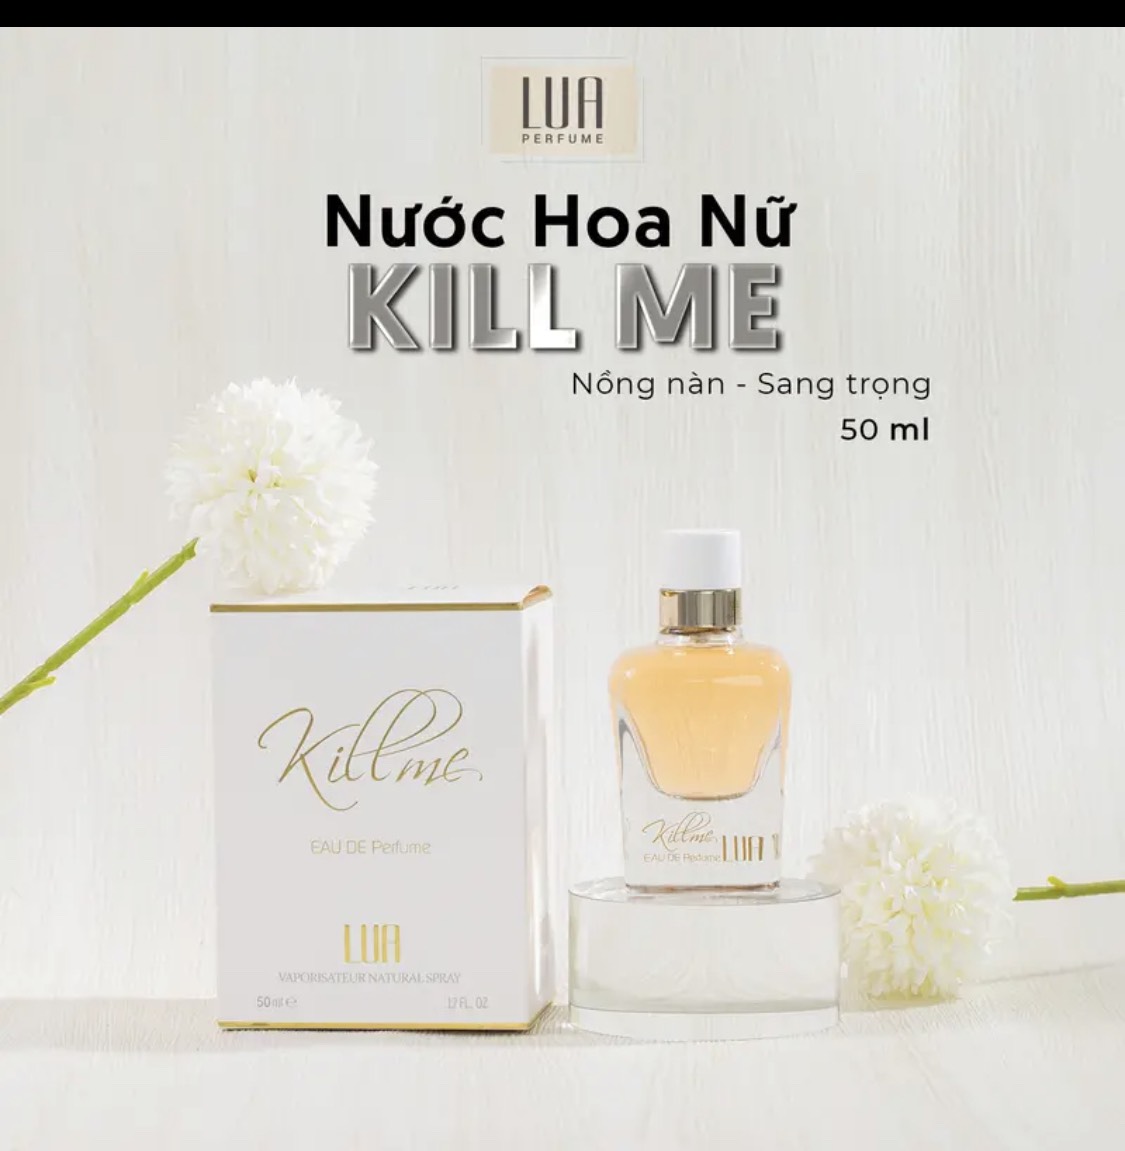 Nơi Lấy Sỉ Nước Hoa Nữ Xạ Hương Bì Kill Me Lua Perfume Chính Hãng ...